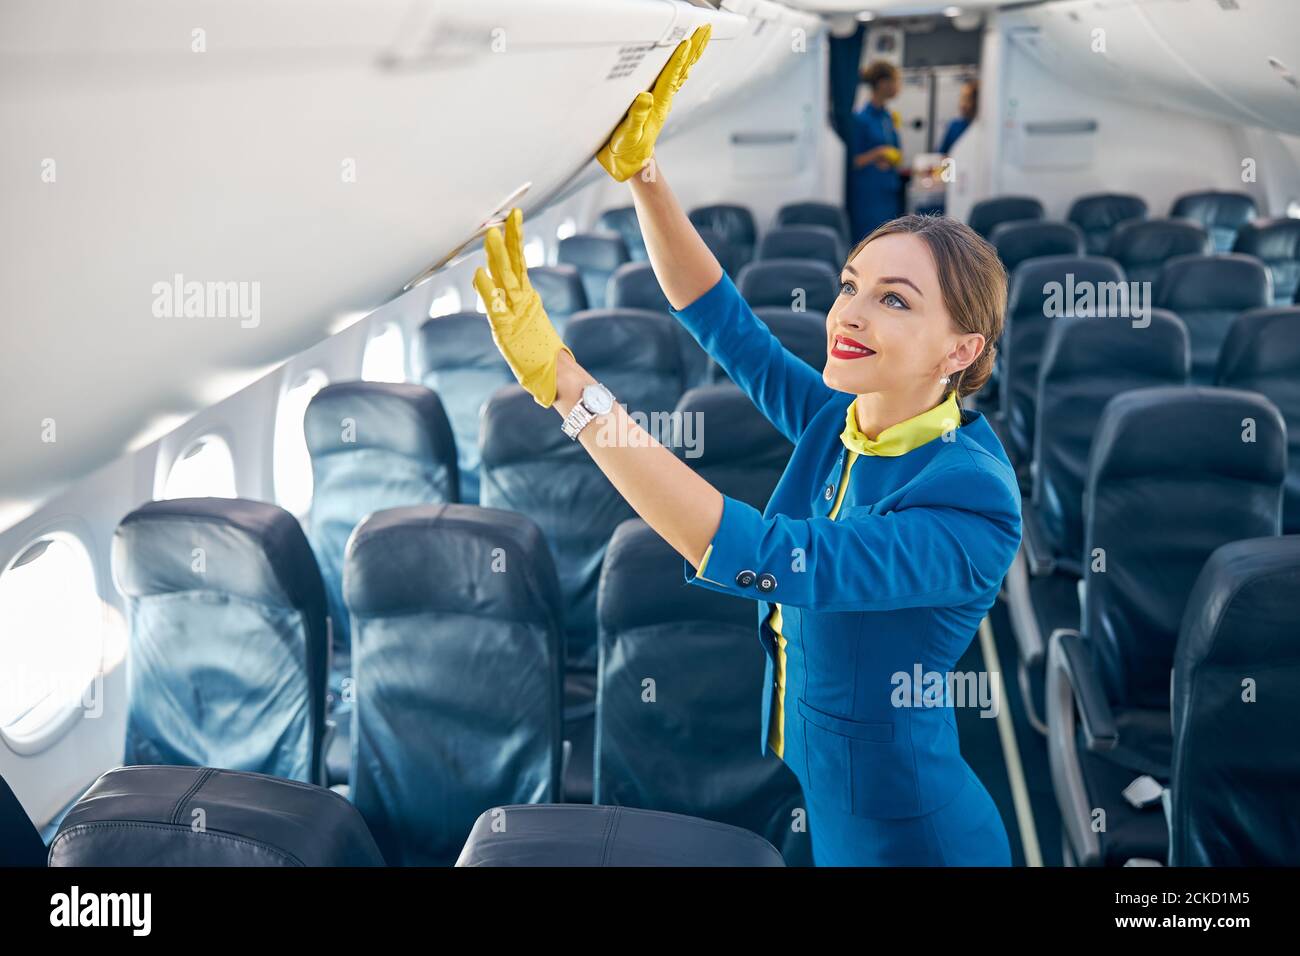 Vérification des gants de costume bleu et de mousseur jaune par le  personnel de bord compartiment avec bagages à main en se tenant dans le  tableau vide d'avion commercial Photo Stock -